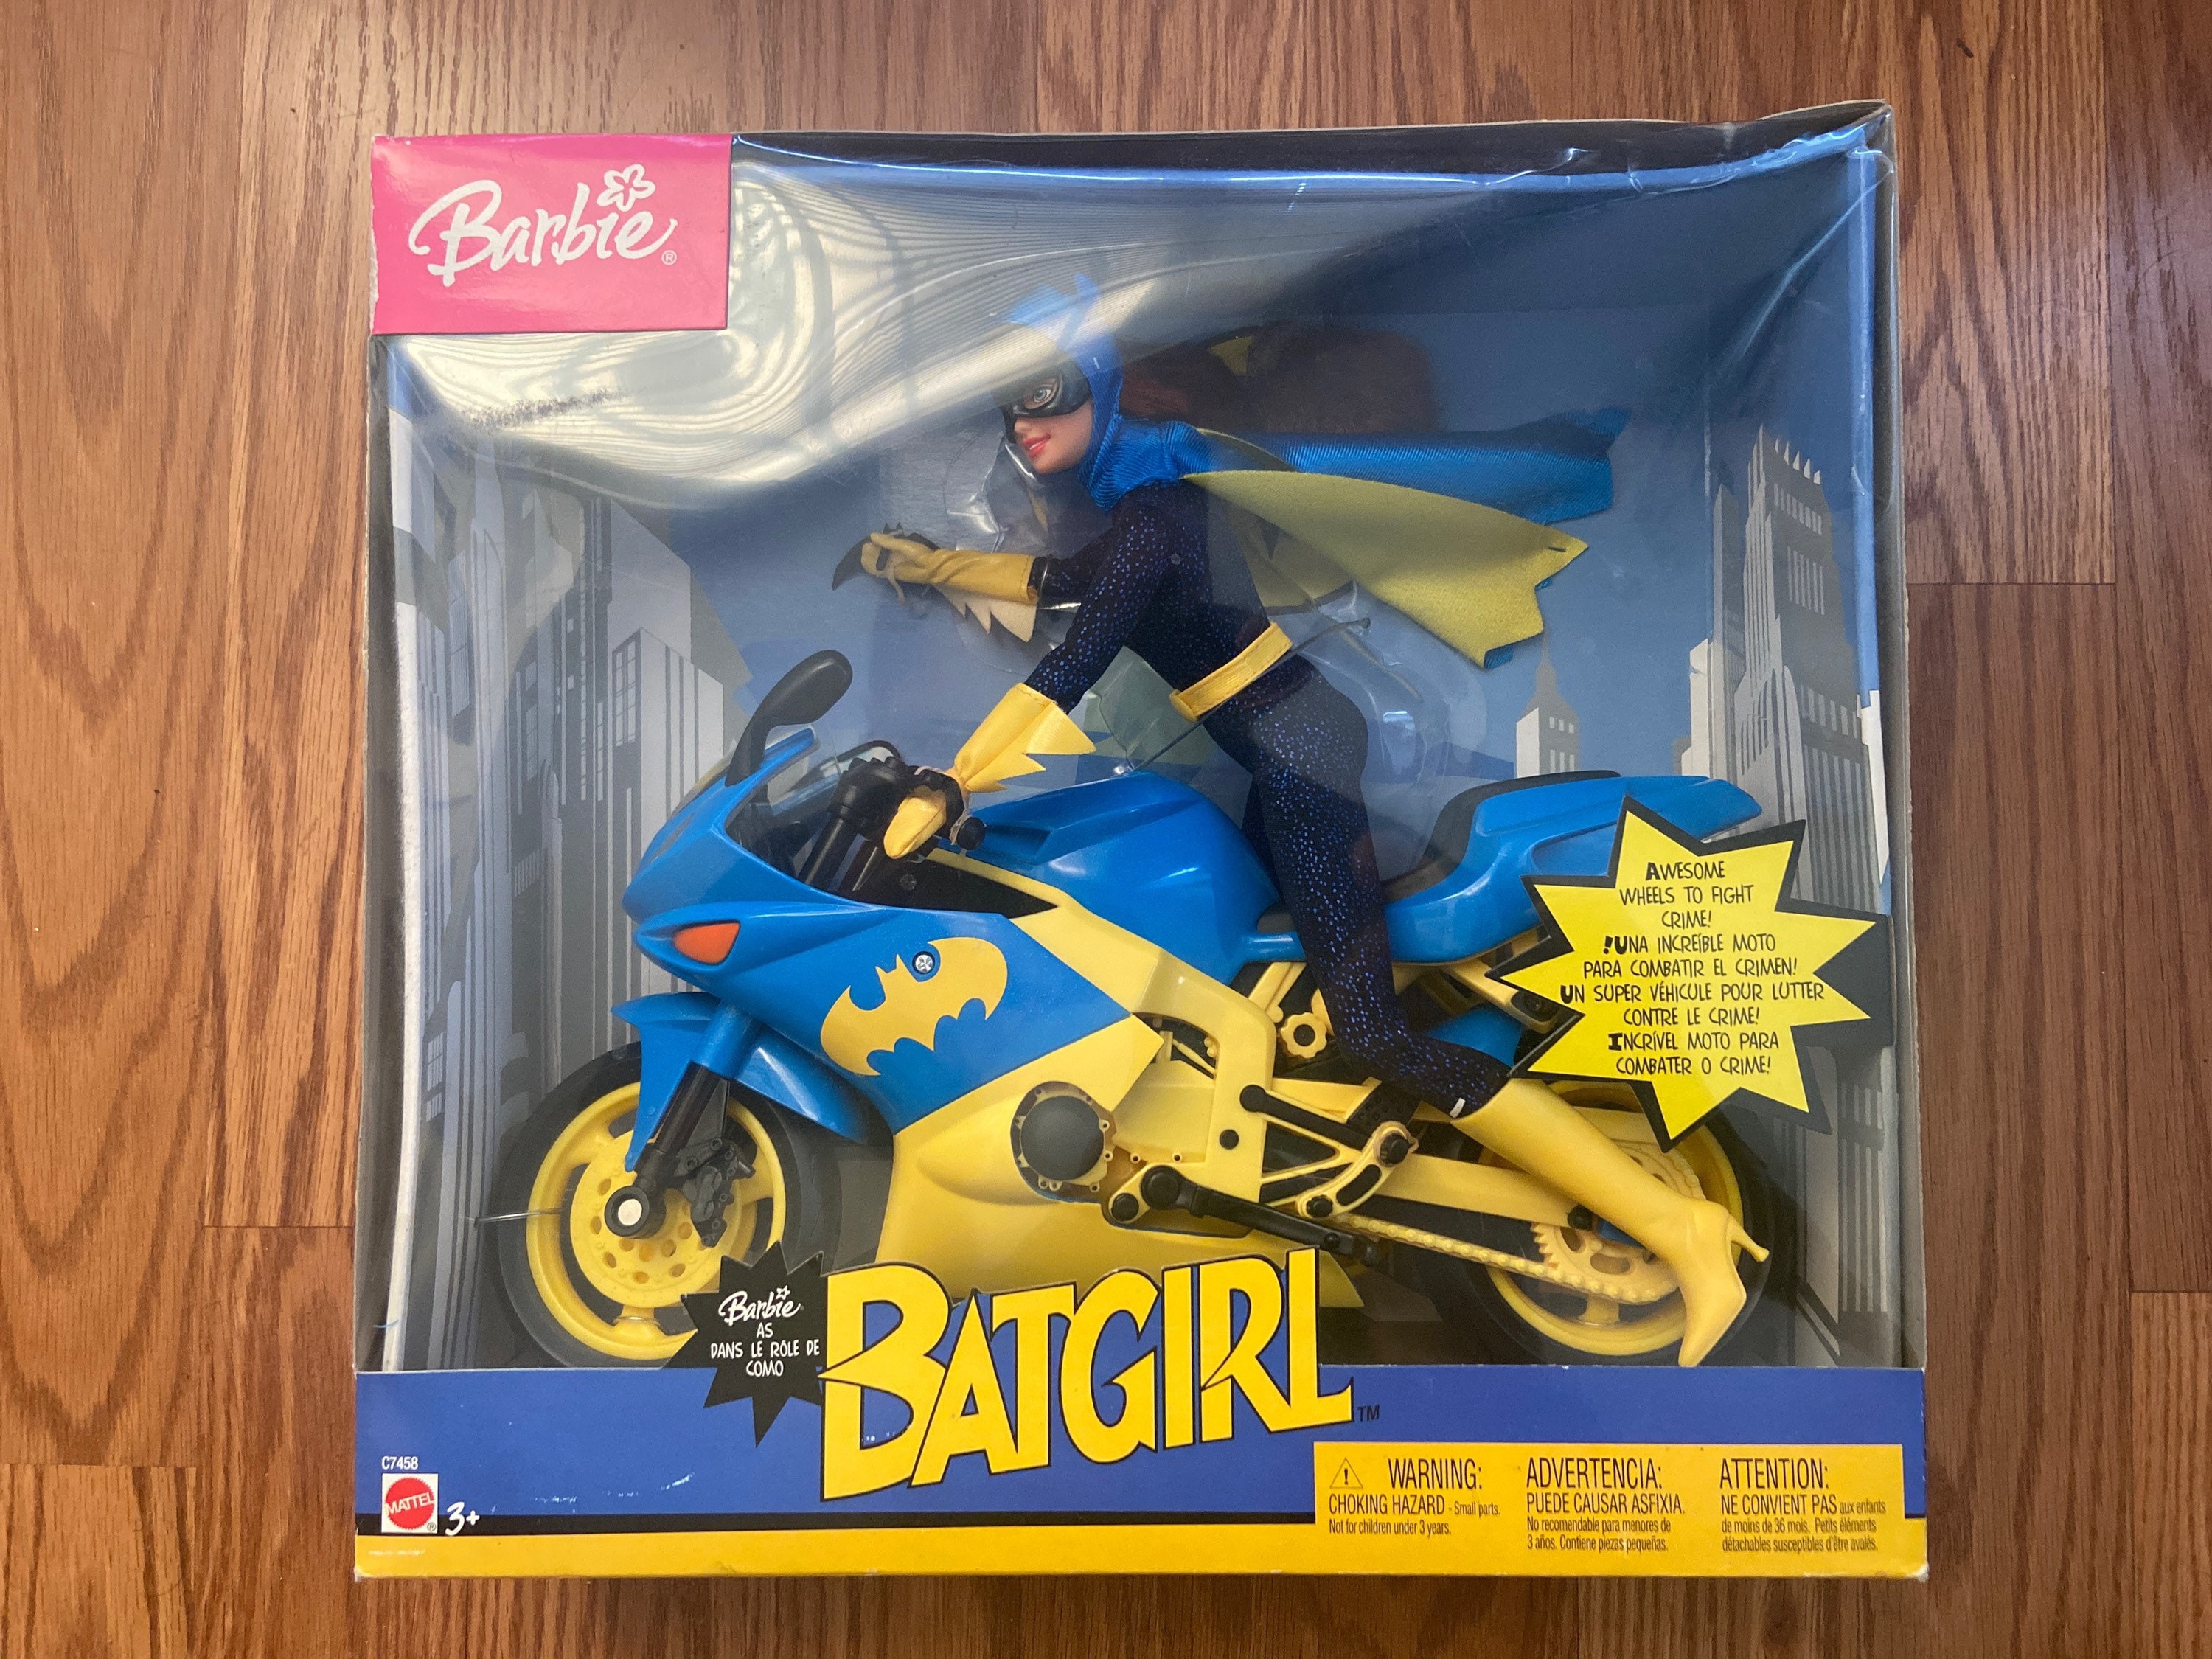 Barbie as Batgirl on Motorcycle 